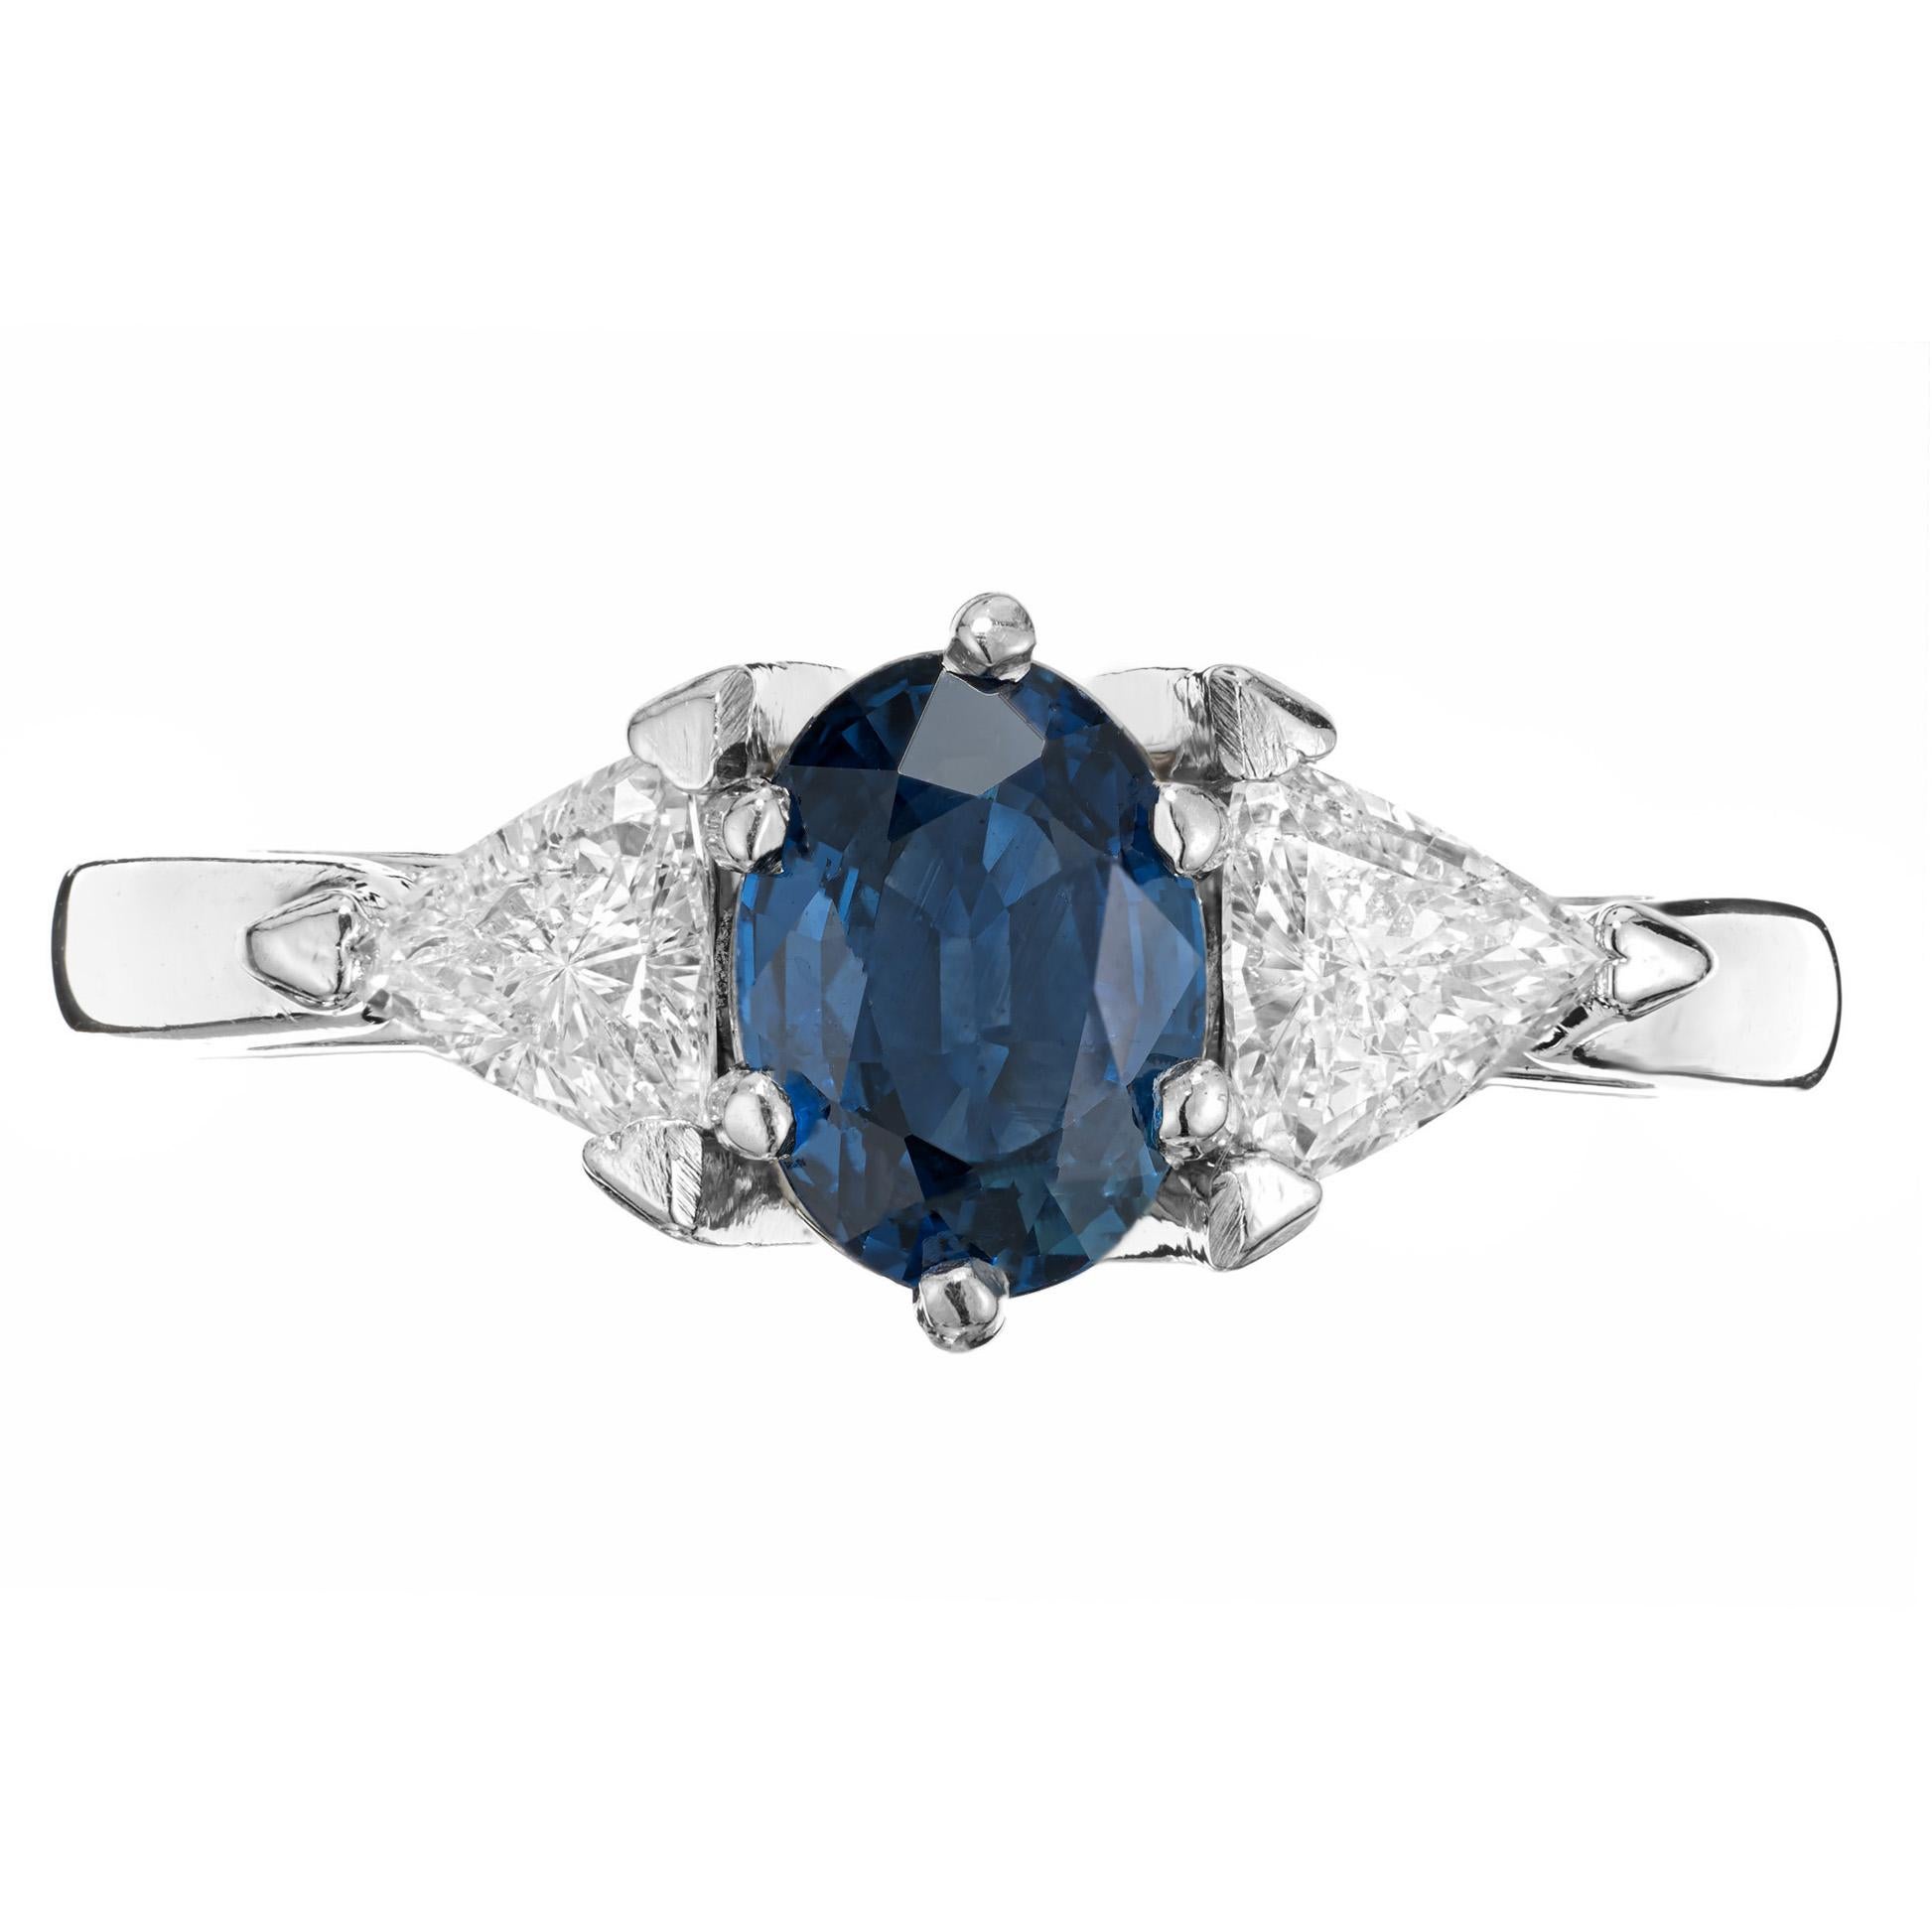 Leuchtend kornblumenblauer Saphir-Diamant-Verlobungsring. GIA-zertifizierter, natürlicher, nicht erhitzter Saphir in einer handgefertigten Fassung mit hellen, funkelnden, dreieckigen, strahlend weißen Diamantseitensteinen.

1 GIA-zertifizierter 7,0